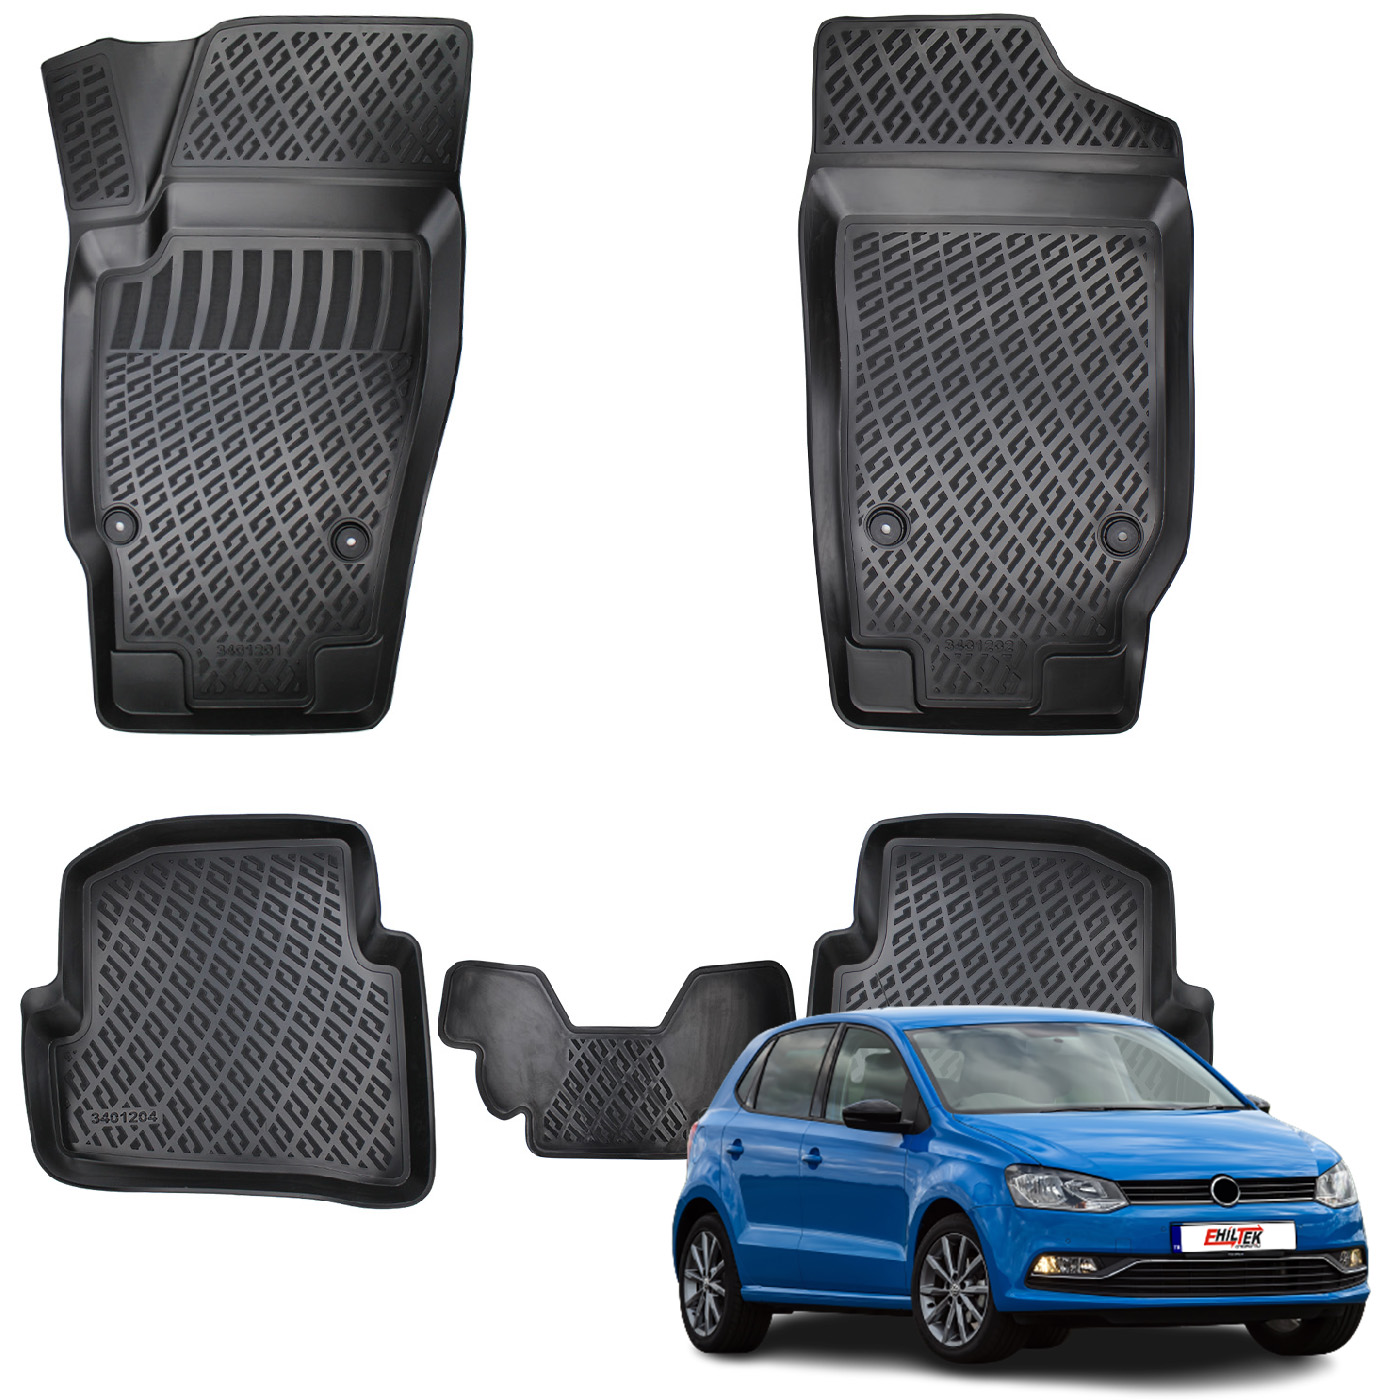 Volkswagen Polo (2009-2017) Kauçuk Paspas - (Siyah)